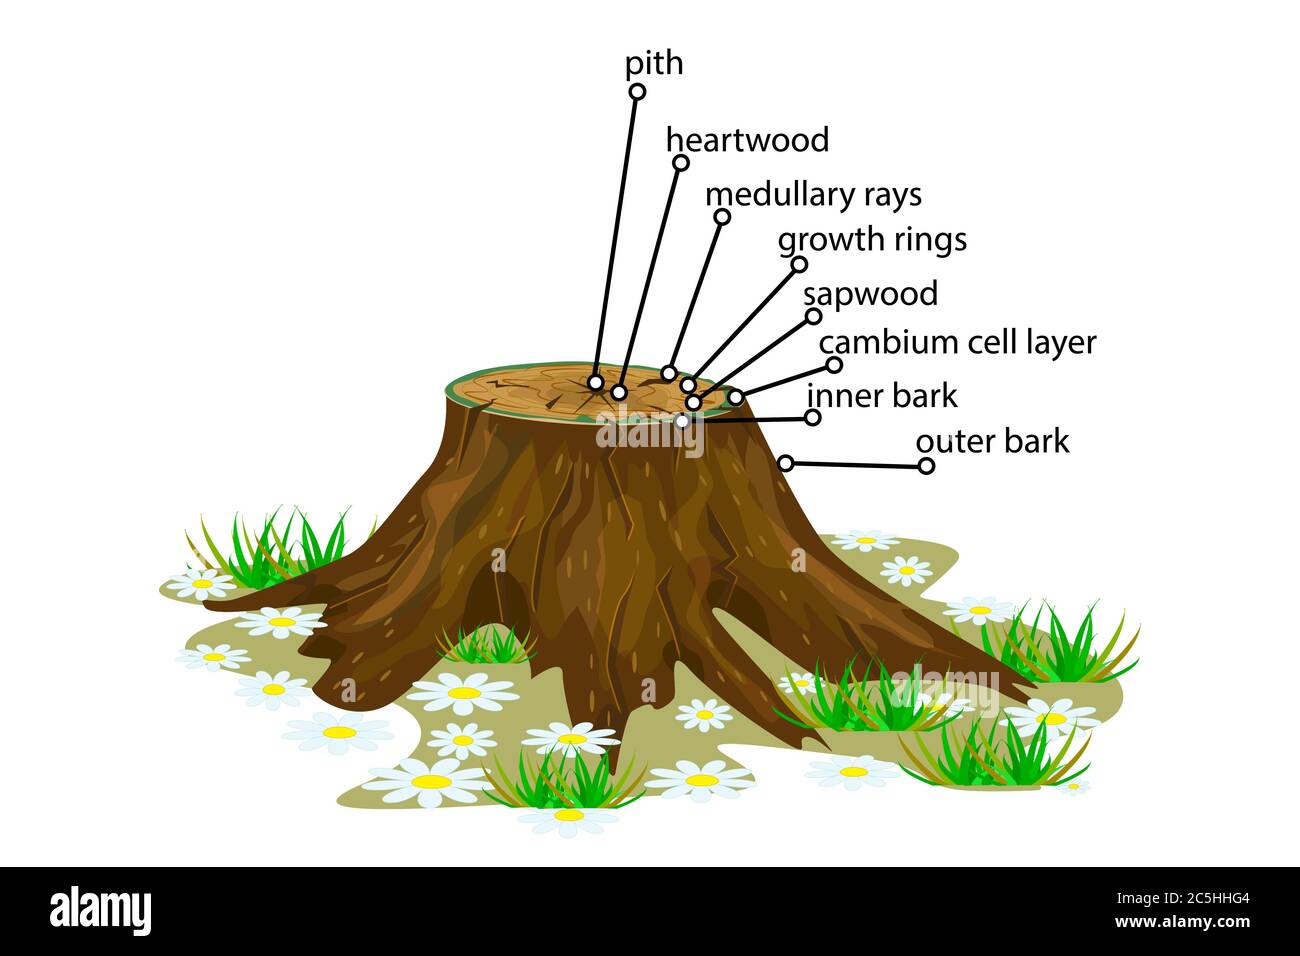 Anatomie eines Baumes. Struktur der Schicht der Baumebenen im Querschnitt. Strukturbaumansicht. Querschnitt von holzigen Stielen. Stock-Vektor Stock Vektor